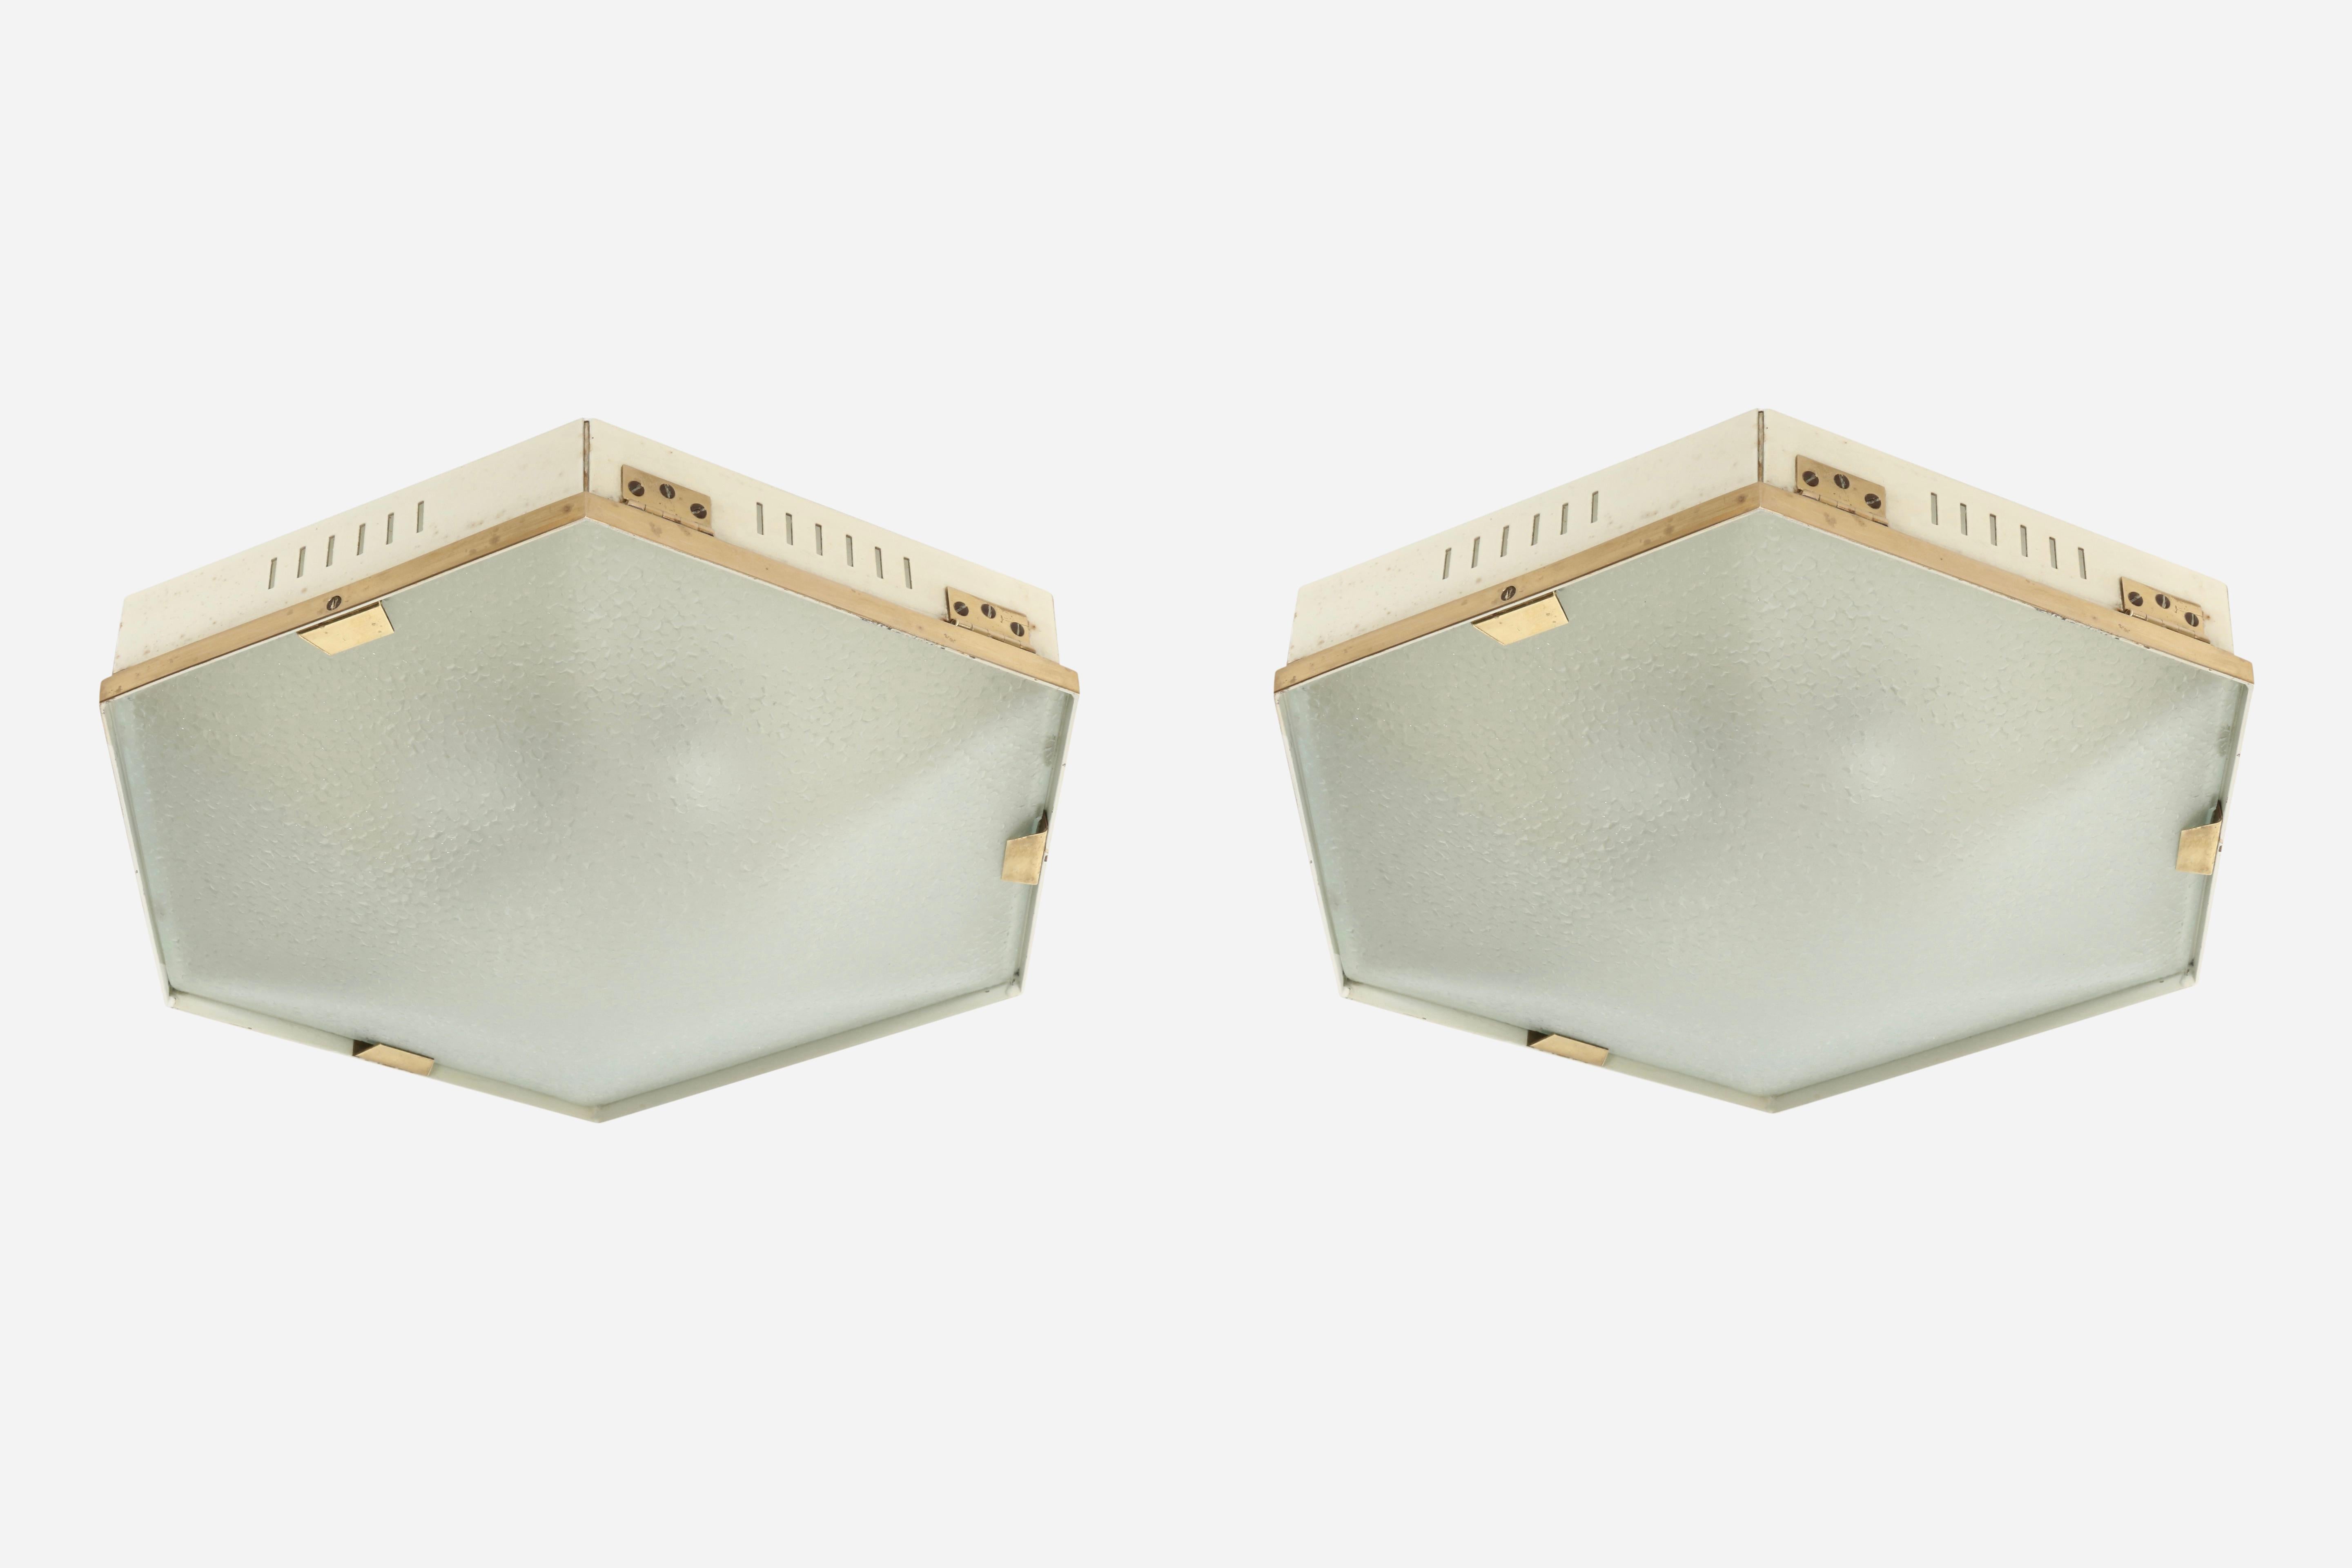 Stilnovo flush mount ceiling light model 1183, a pair
Made in Italy in 1950s.
Textured glass, brass, enameled metal.
Stilnovo label.
 